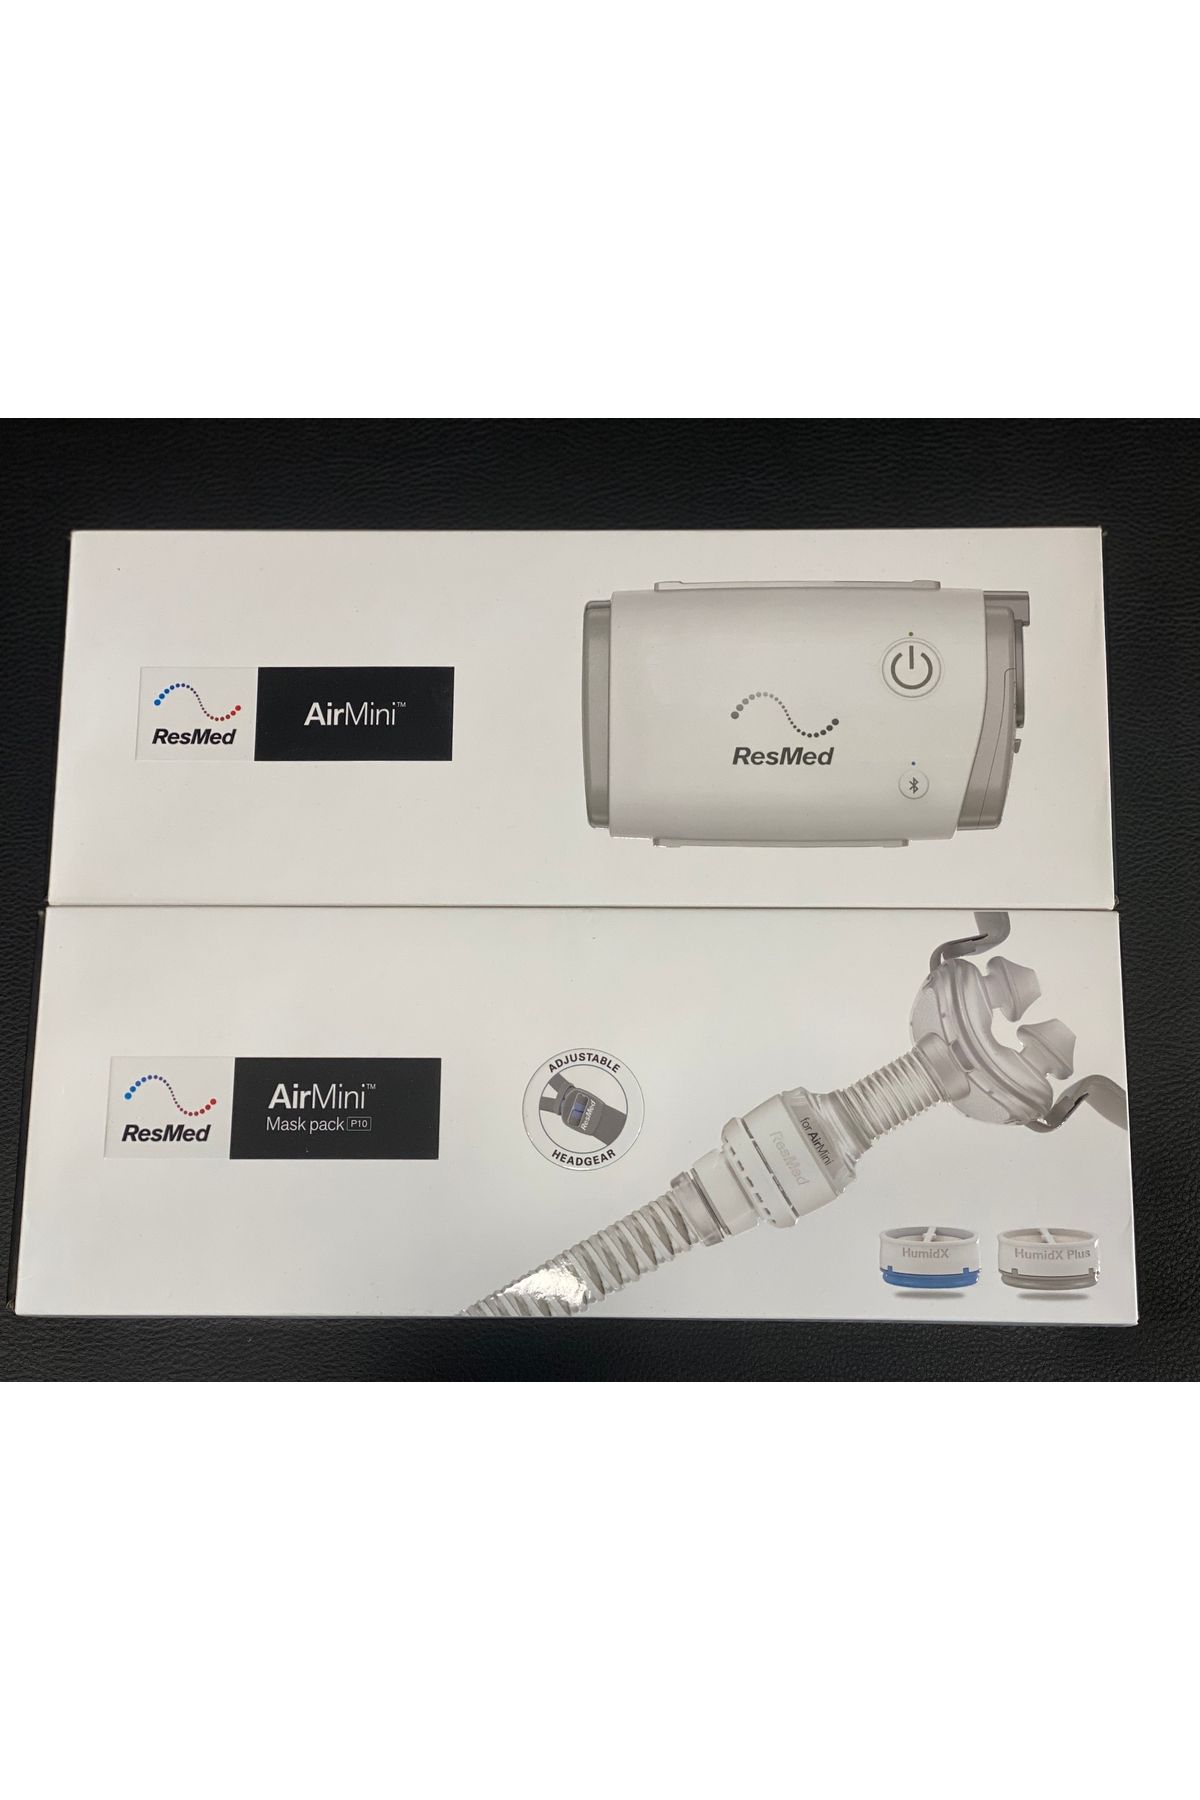 Resmed AirMini En Küçük Taşınabilir Otomatik CPAP Cihazı + ResMed P10 Maske+AirMini Bağlantısı